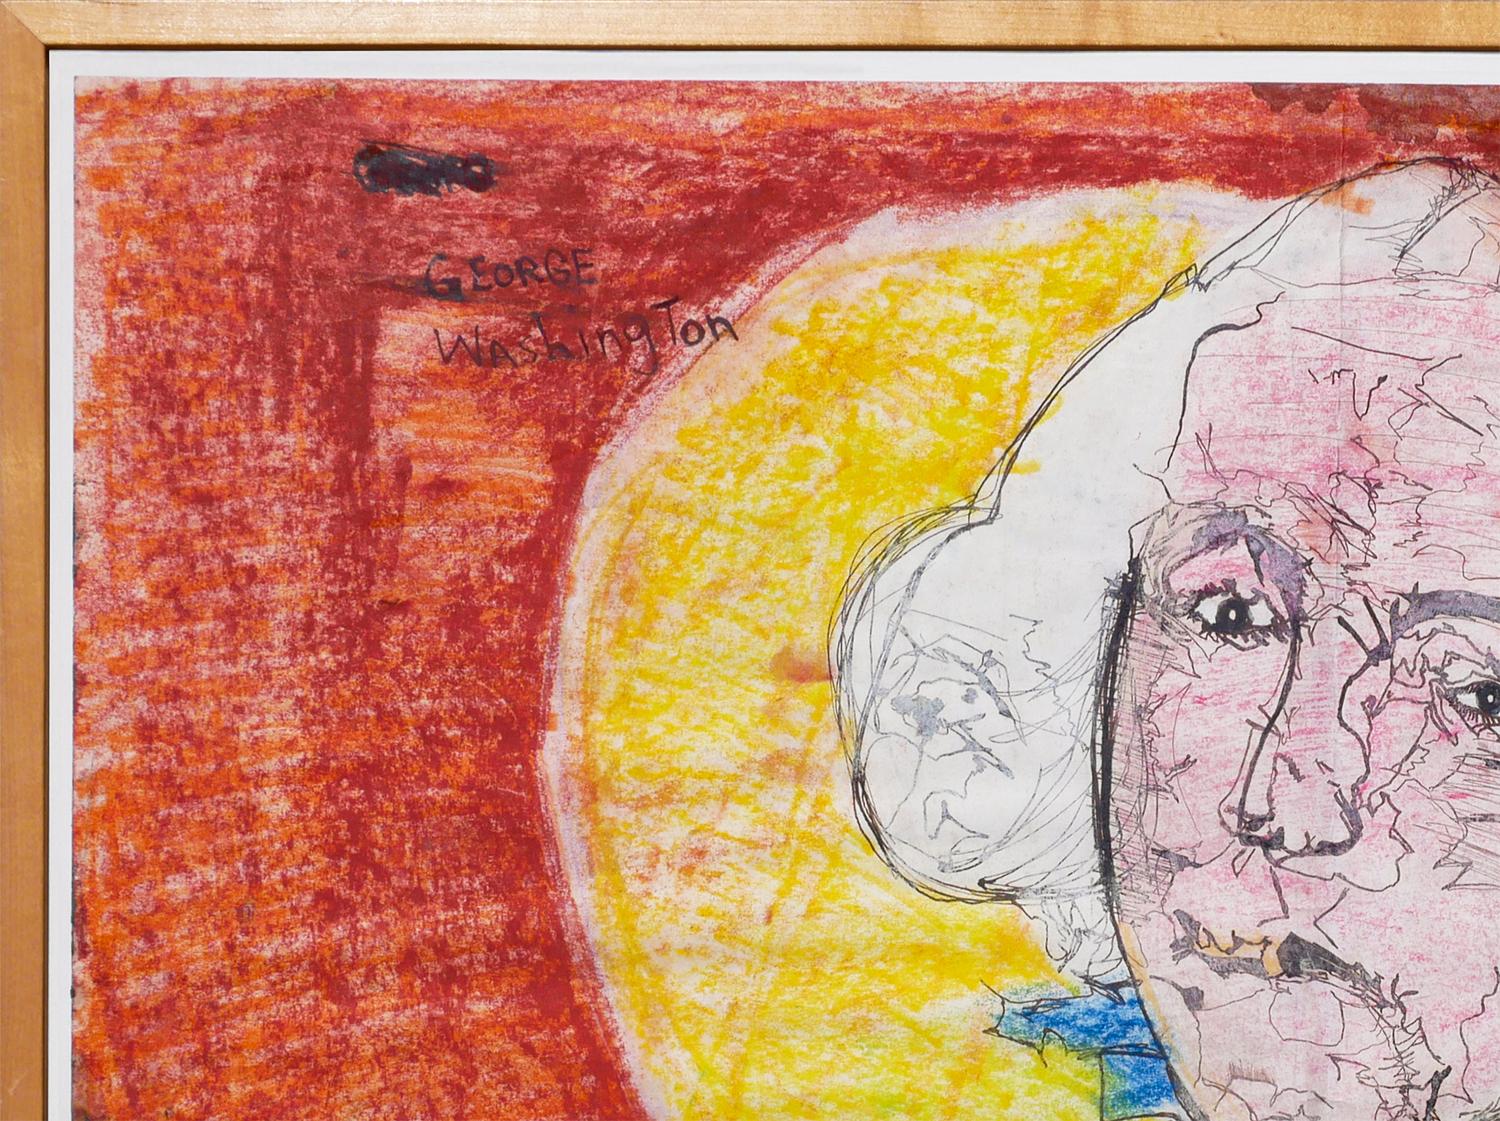 Portrait figuratif abstrait orange, bleu et jaune de l'artiste texan Ike E. Morgan. Ce dessin au pastel représente une figure abstraite de George Washington entourée d'un halo jaune sur un fond expressionniste rouge et orange. Signé par l'artiste en